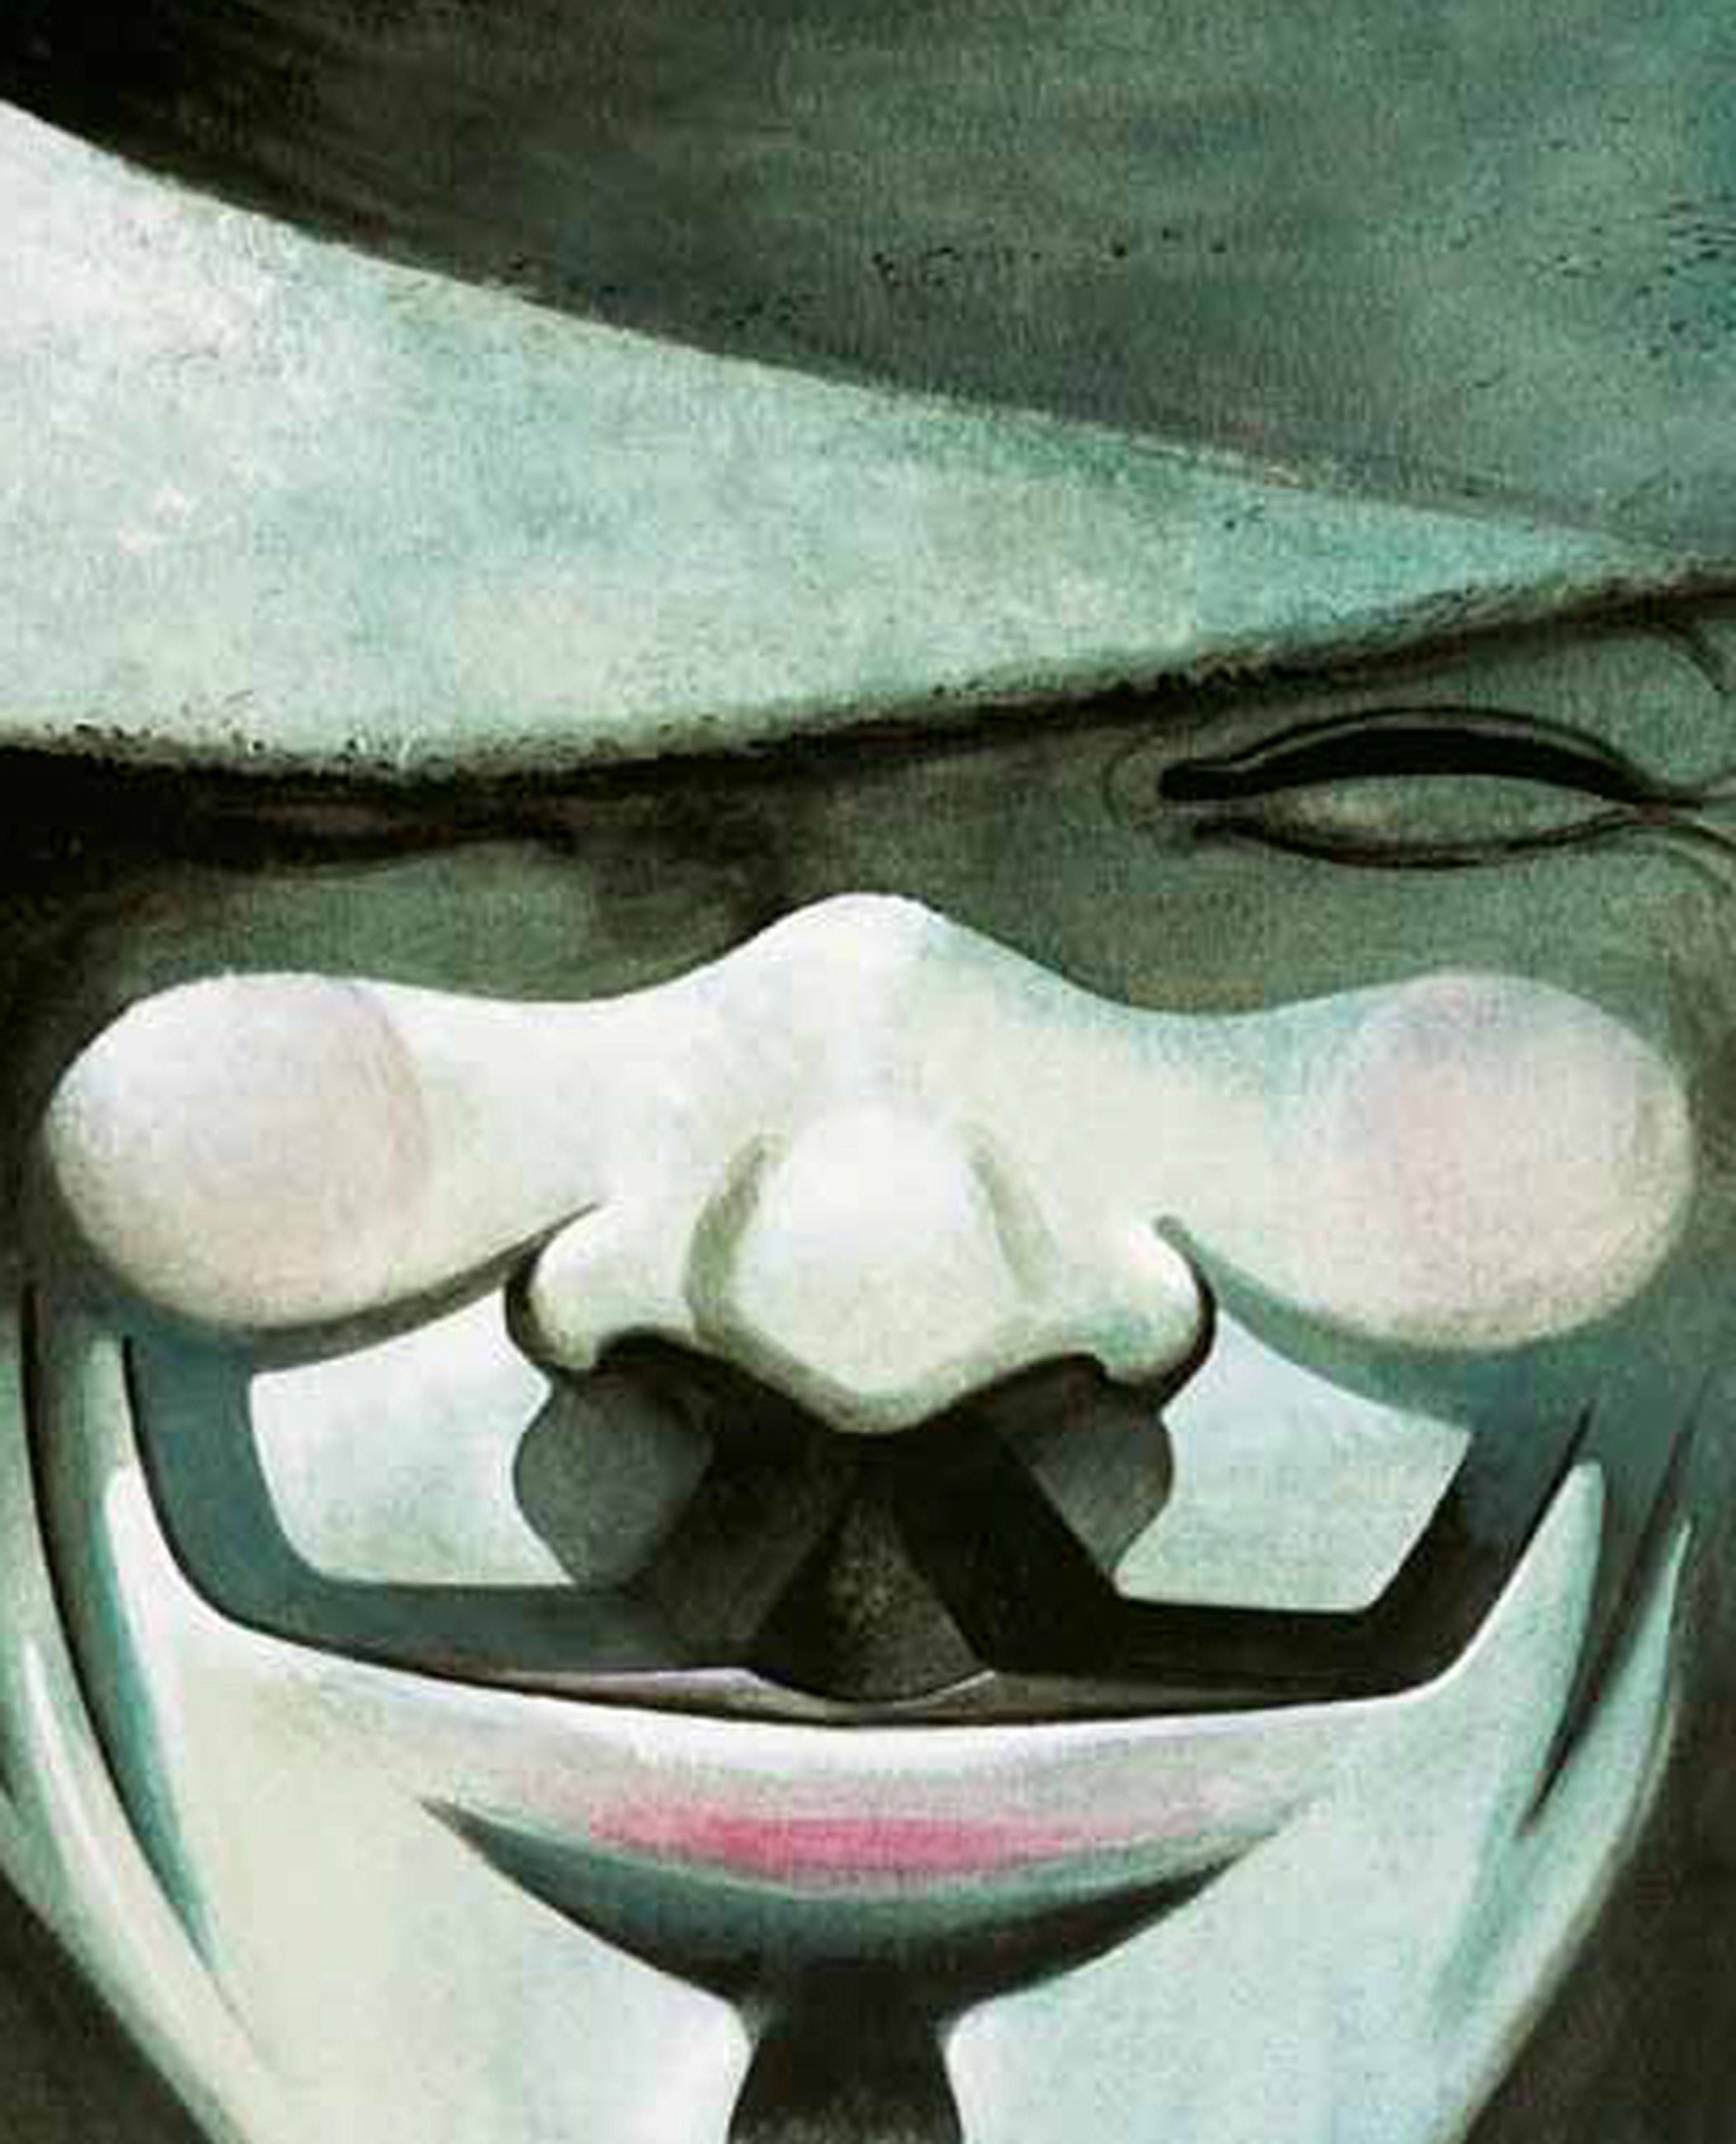 ECC reeditará V de Vendetta